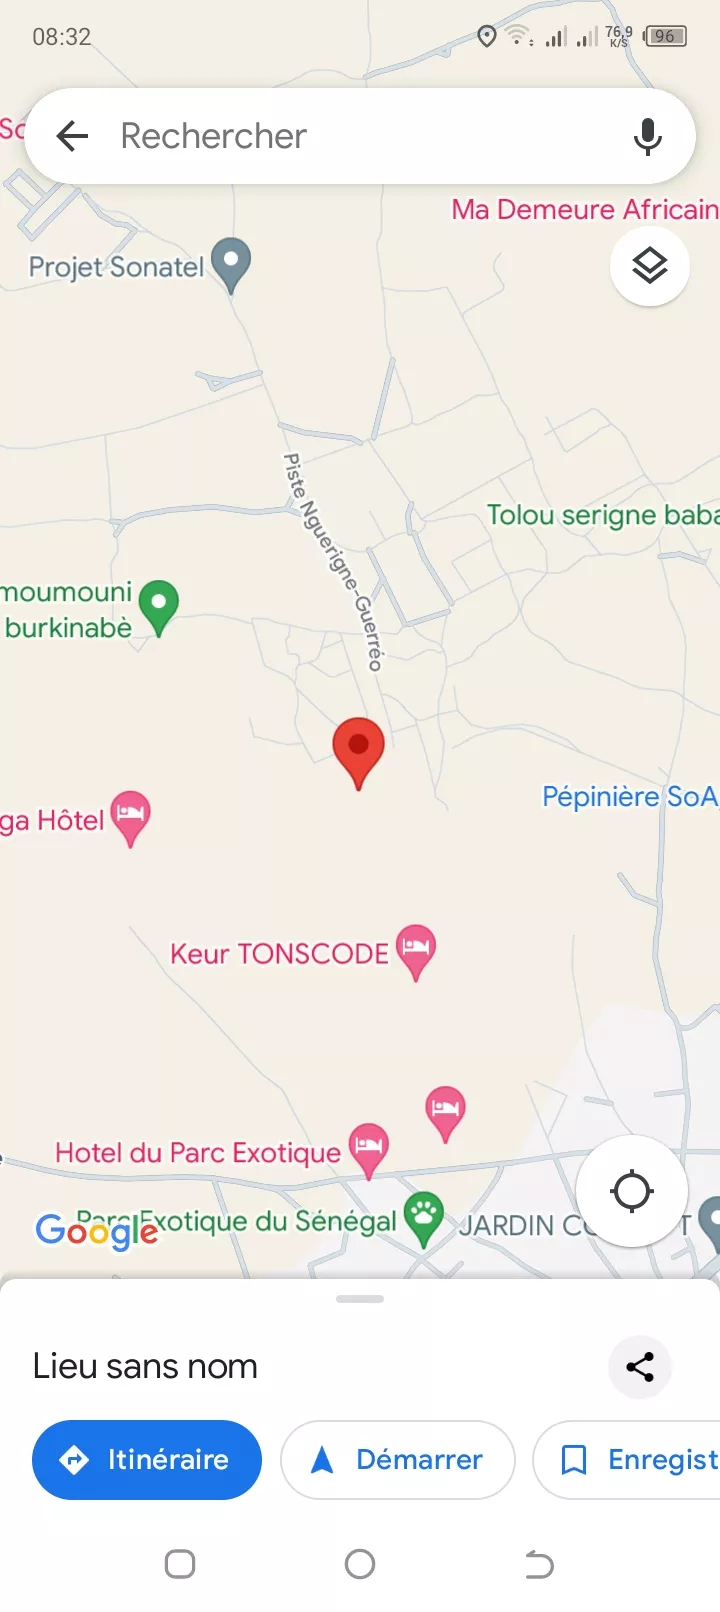 Terrain 300 mètres carrés à Nguérigne à 10000000 - Petites annonces gratuites - Achat et vente à Mbour, Sénégal